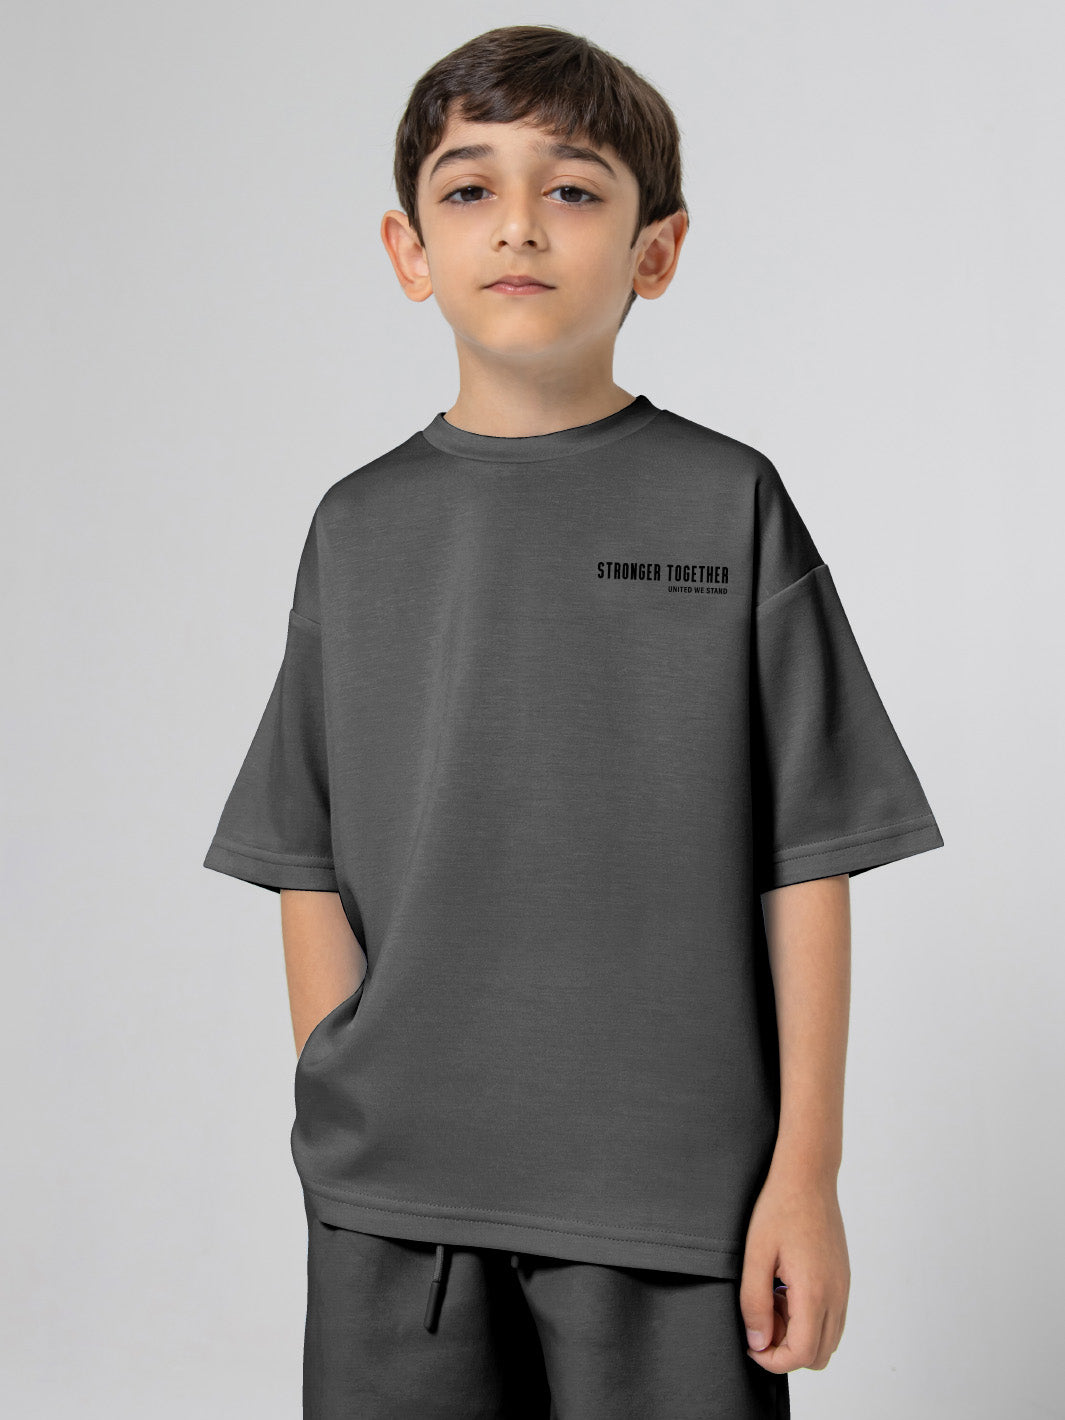 Kids Oversized Soft T-Shirt - Stronger Together